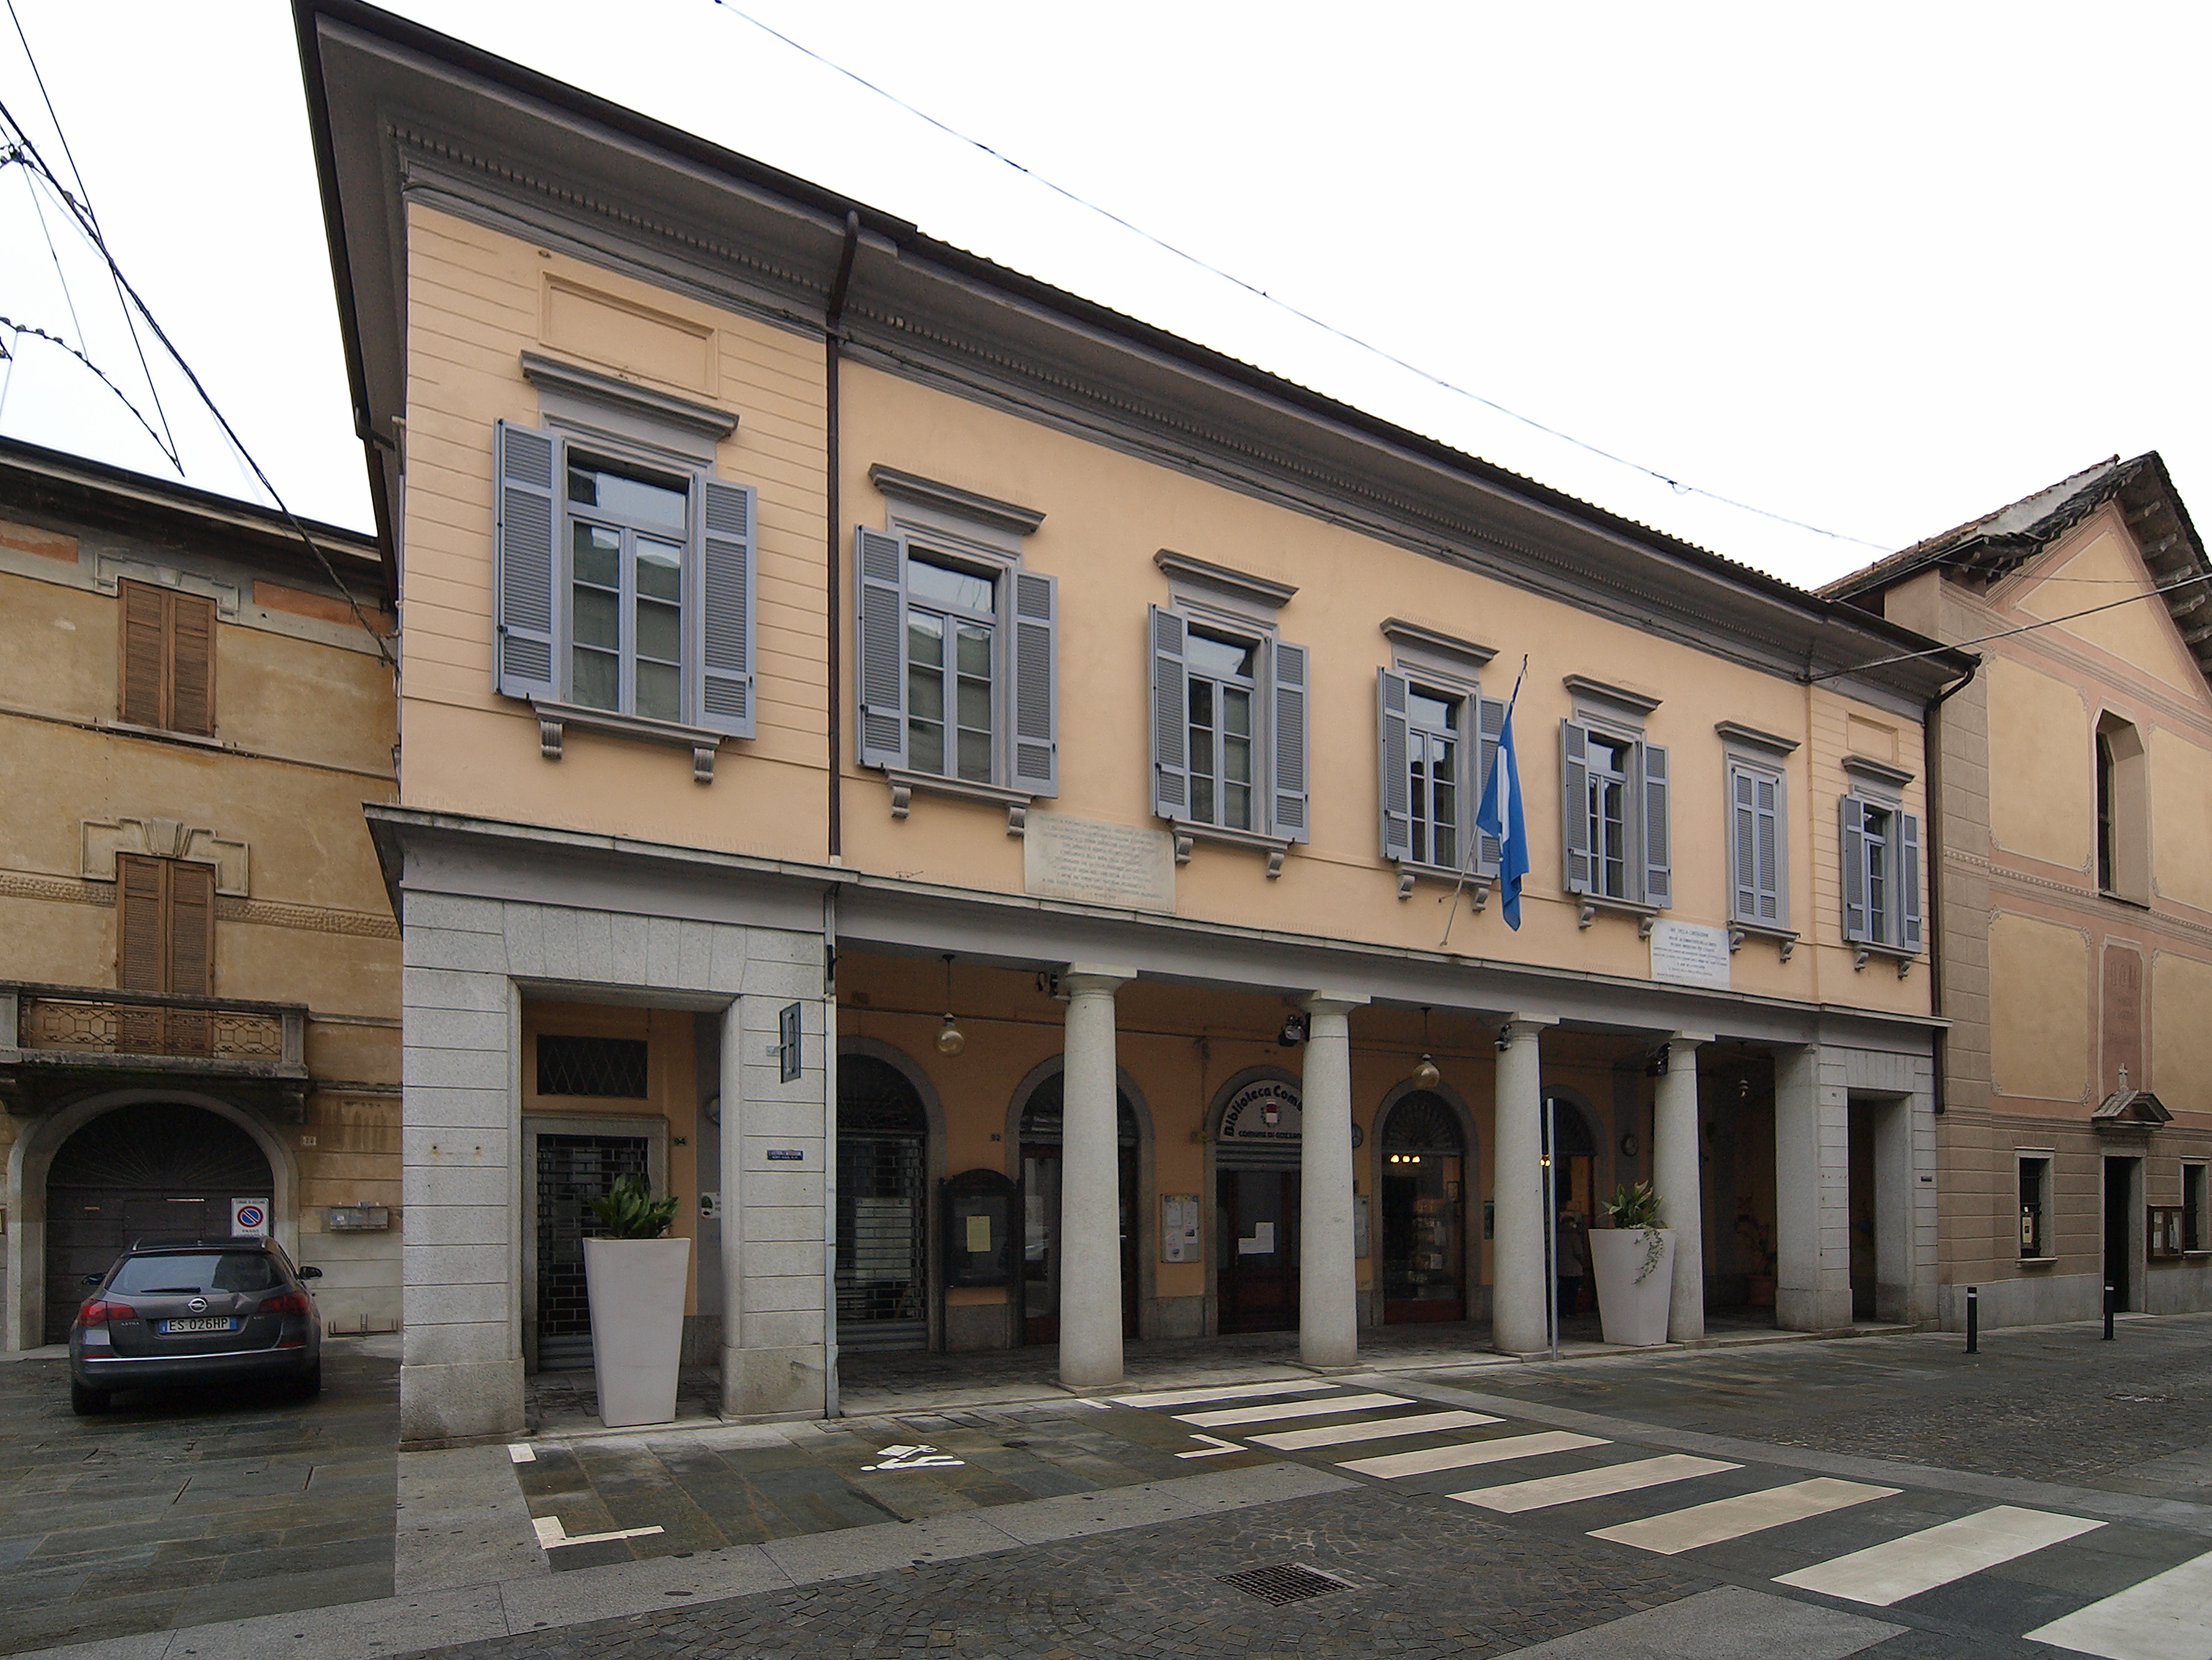 Biblioteca comunale (palazzo, pubblico) - GOZZANO (NO)  (XX, inizio)